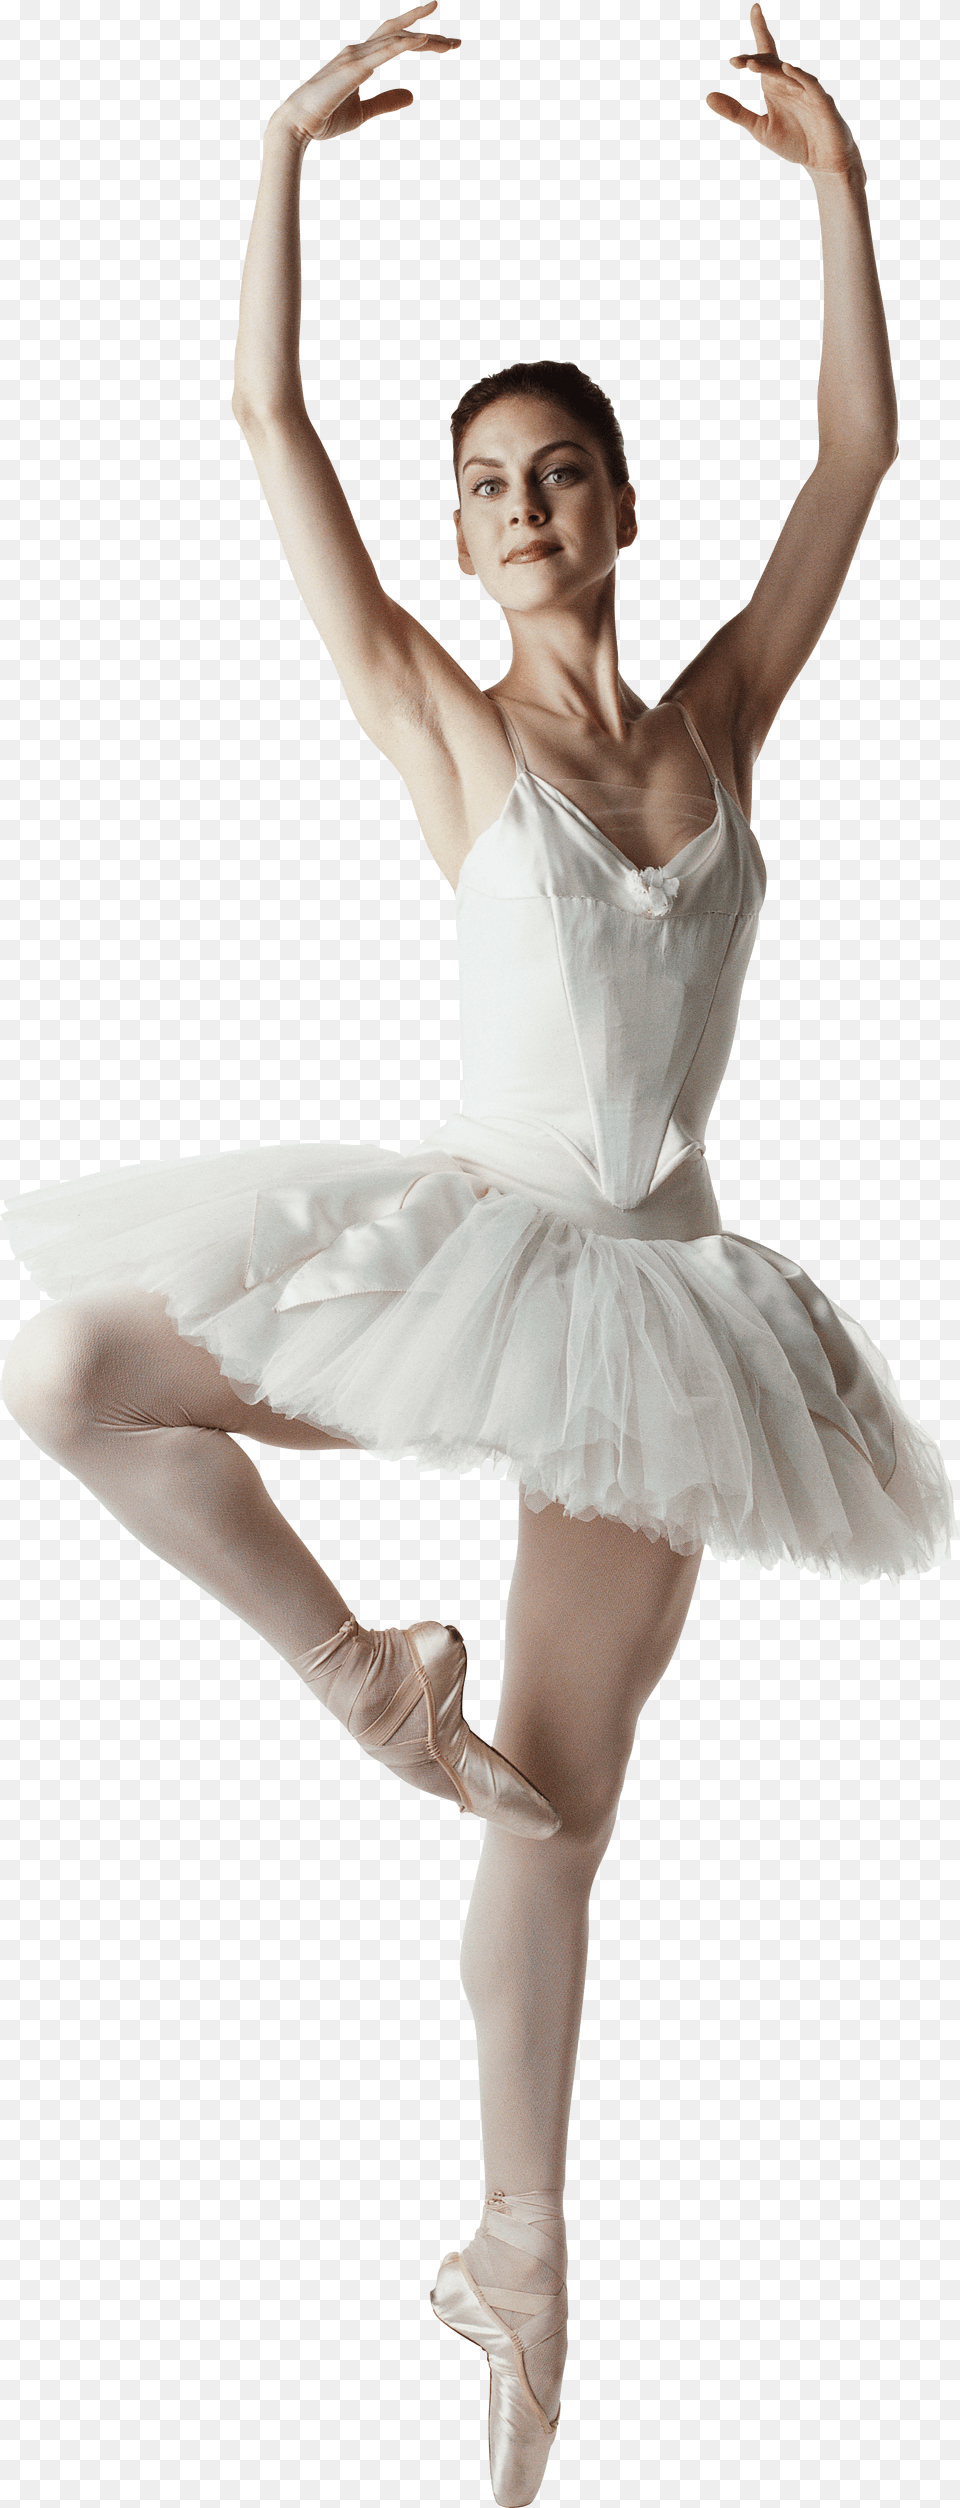 Ballet Dancer Ballet Equipment, Ballerina, Person, Dancing, Leisure Activities Free Png